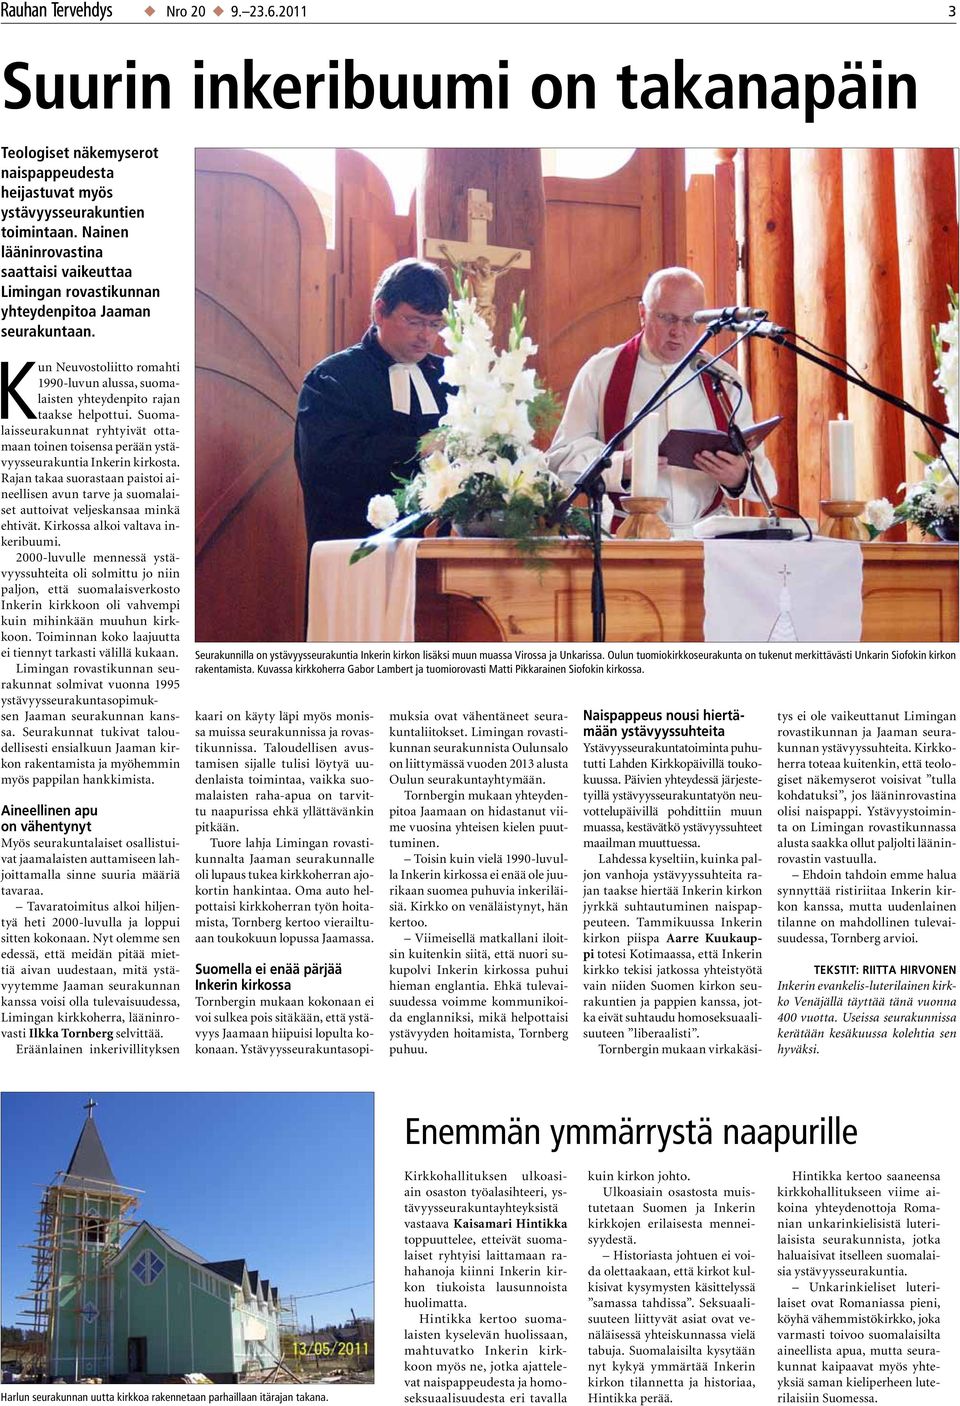 Suomalaisseurakunnat ryhtyivät ottamaan toinen toisensa perään ystävyysseurakuntia Inkerin kirkosta.